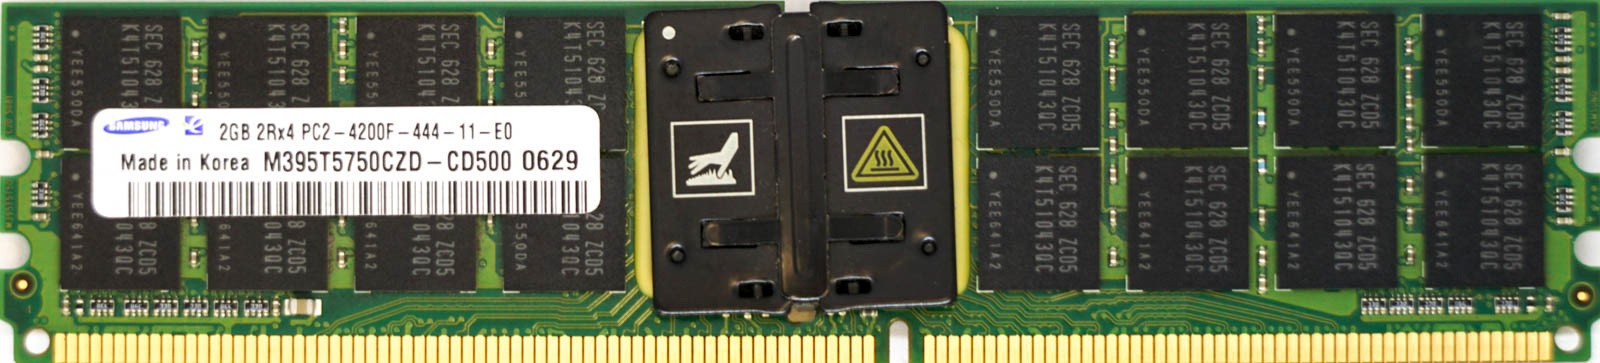 Samsung - 2GB PC2-4200F (DDR2-533Mhz, 2RX4)